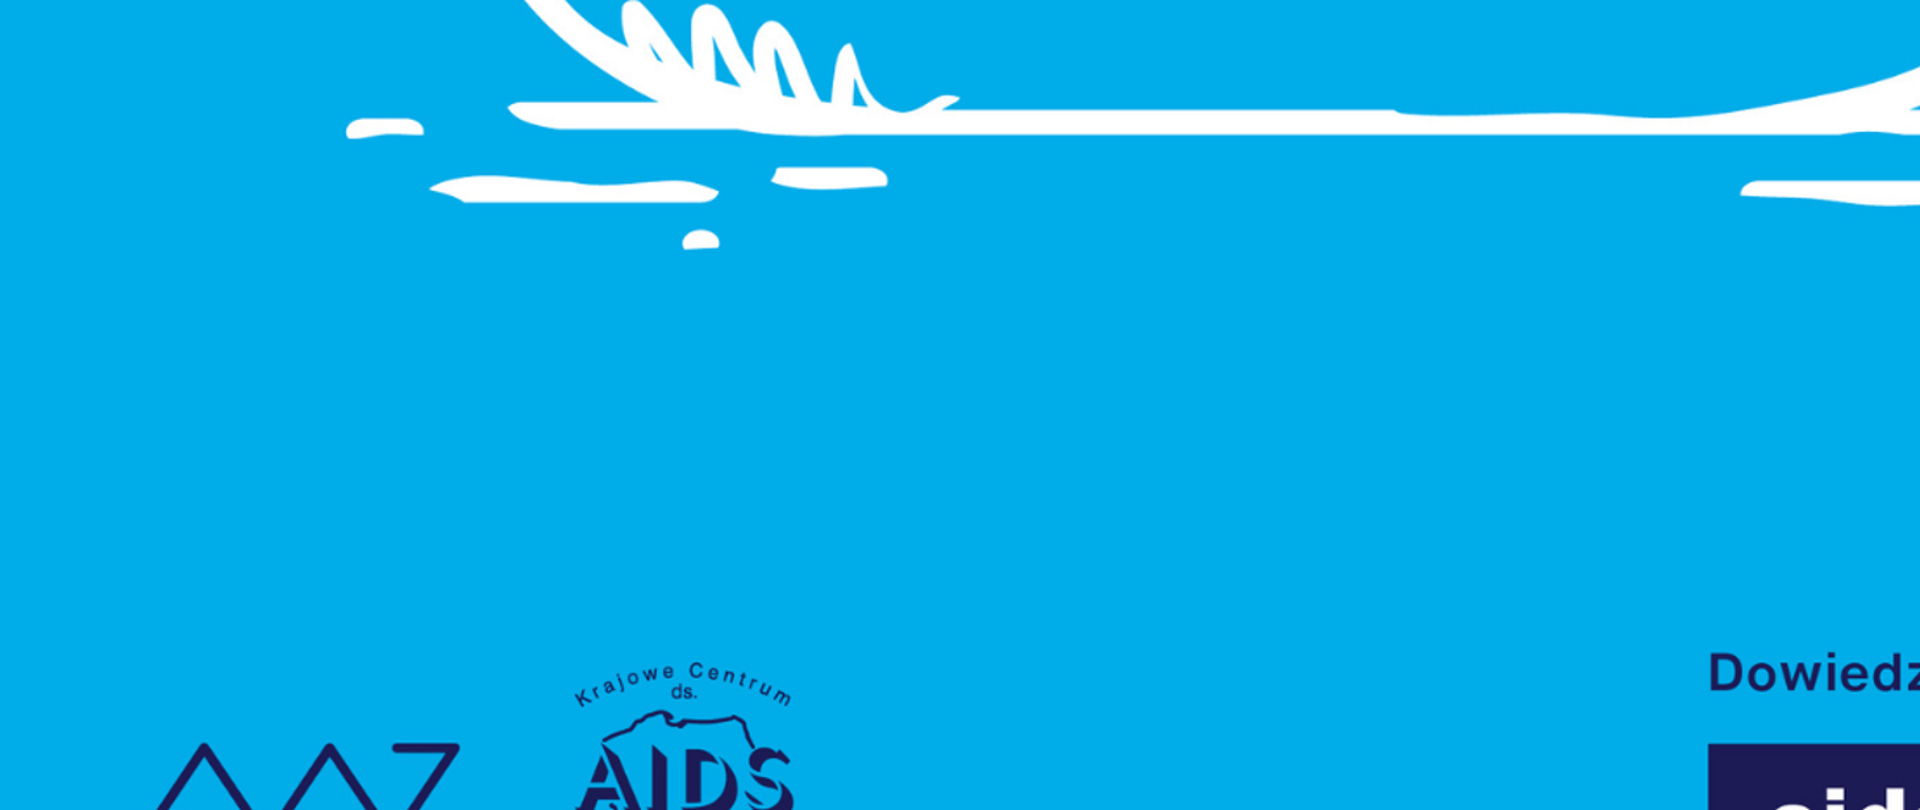 Grafika z tekstem: Dowiedz się więcej na aids.gov.pl. Logotypy Ministerstwa Zdrowia i Krajowego Centrum ds. AIDS